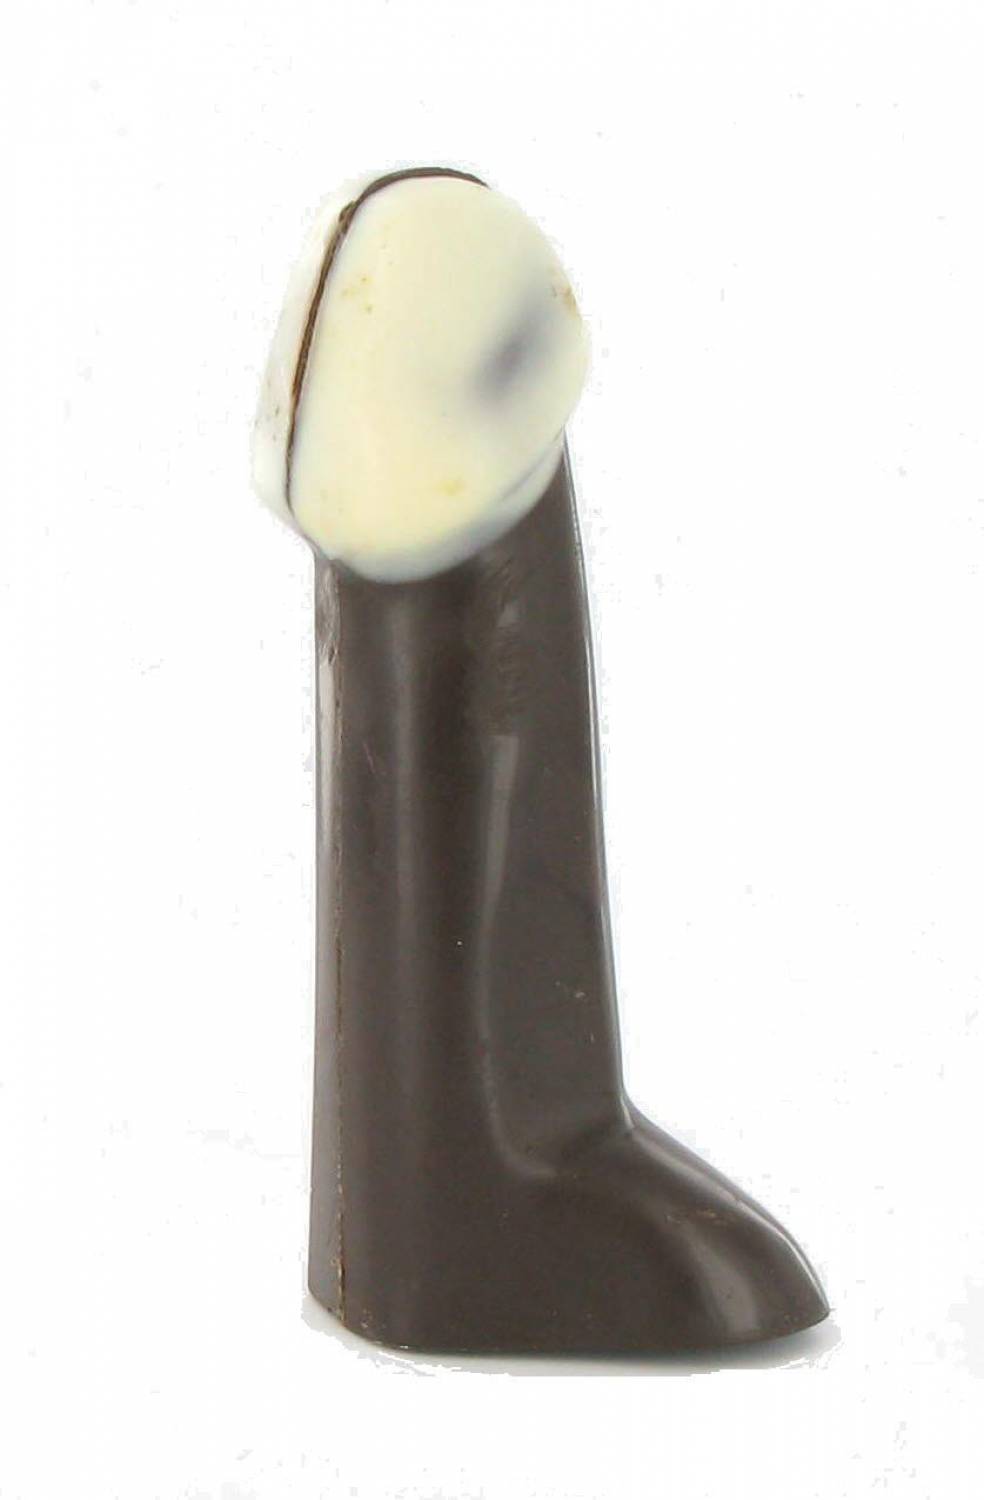 Snoep Jongeheer - Chocolade Puur